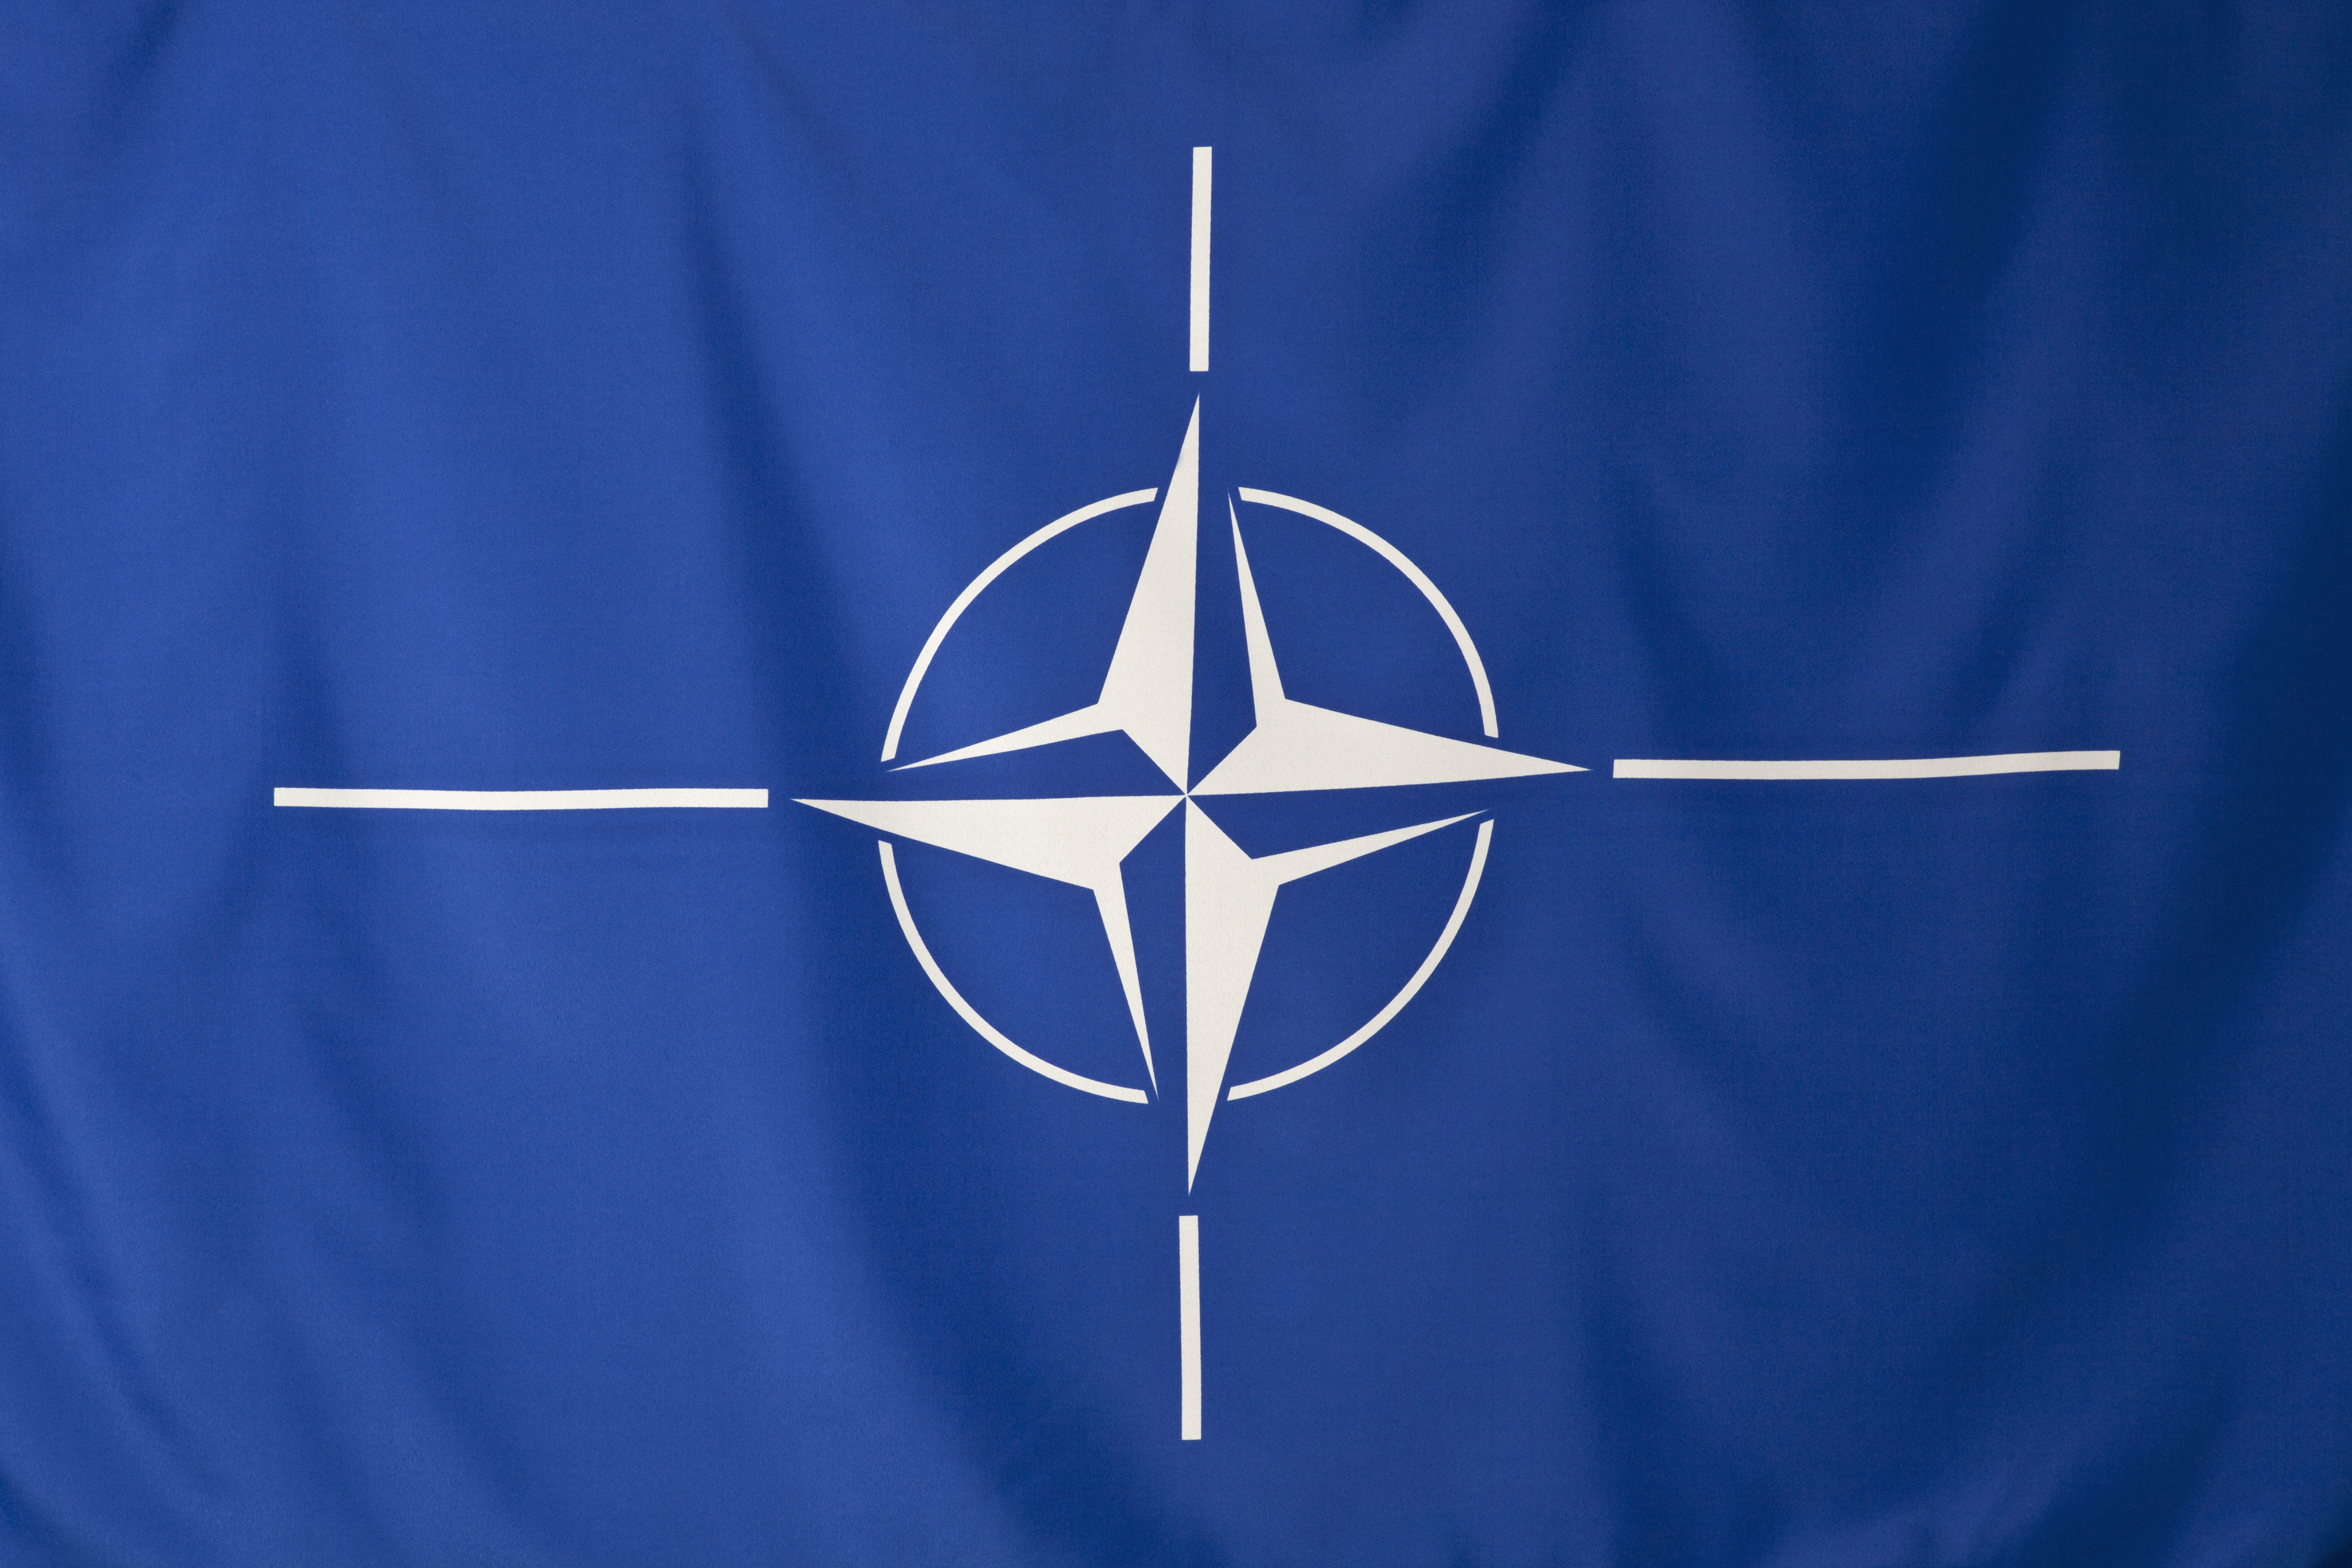 Pentru prima dată importanța Mării Negre va fi recunoscută într-un document oficial NATO